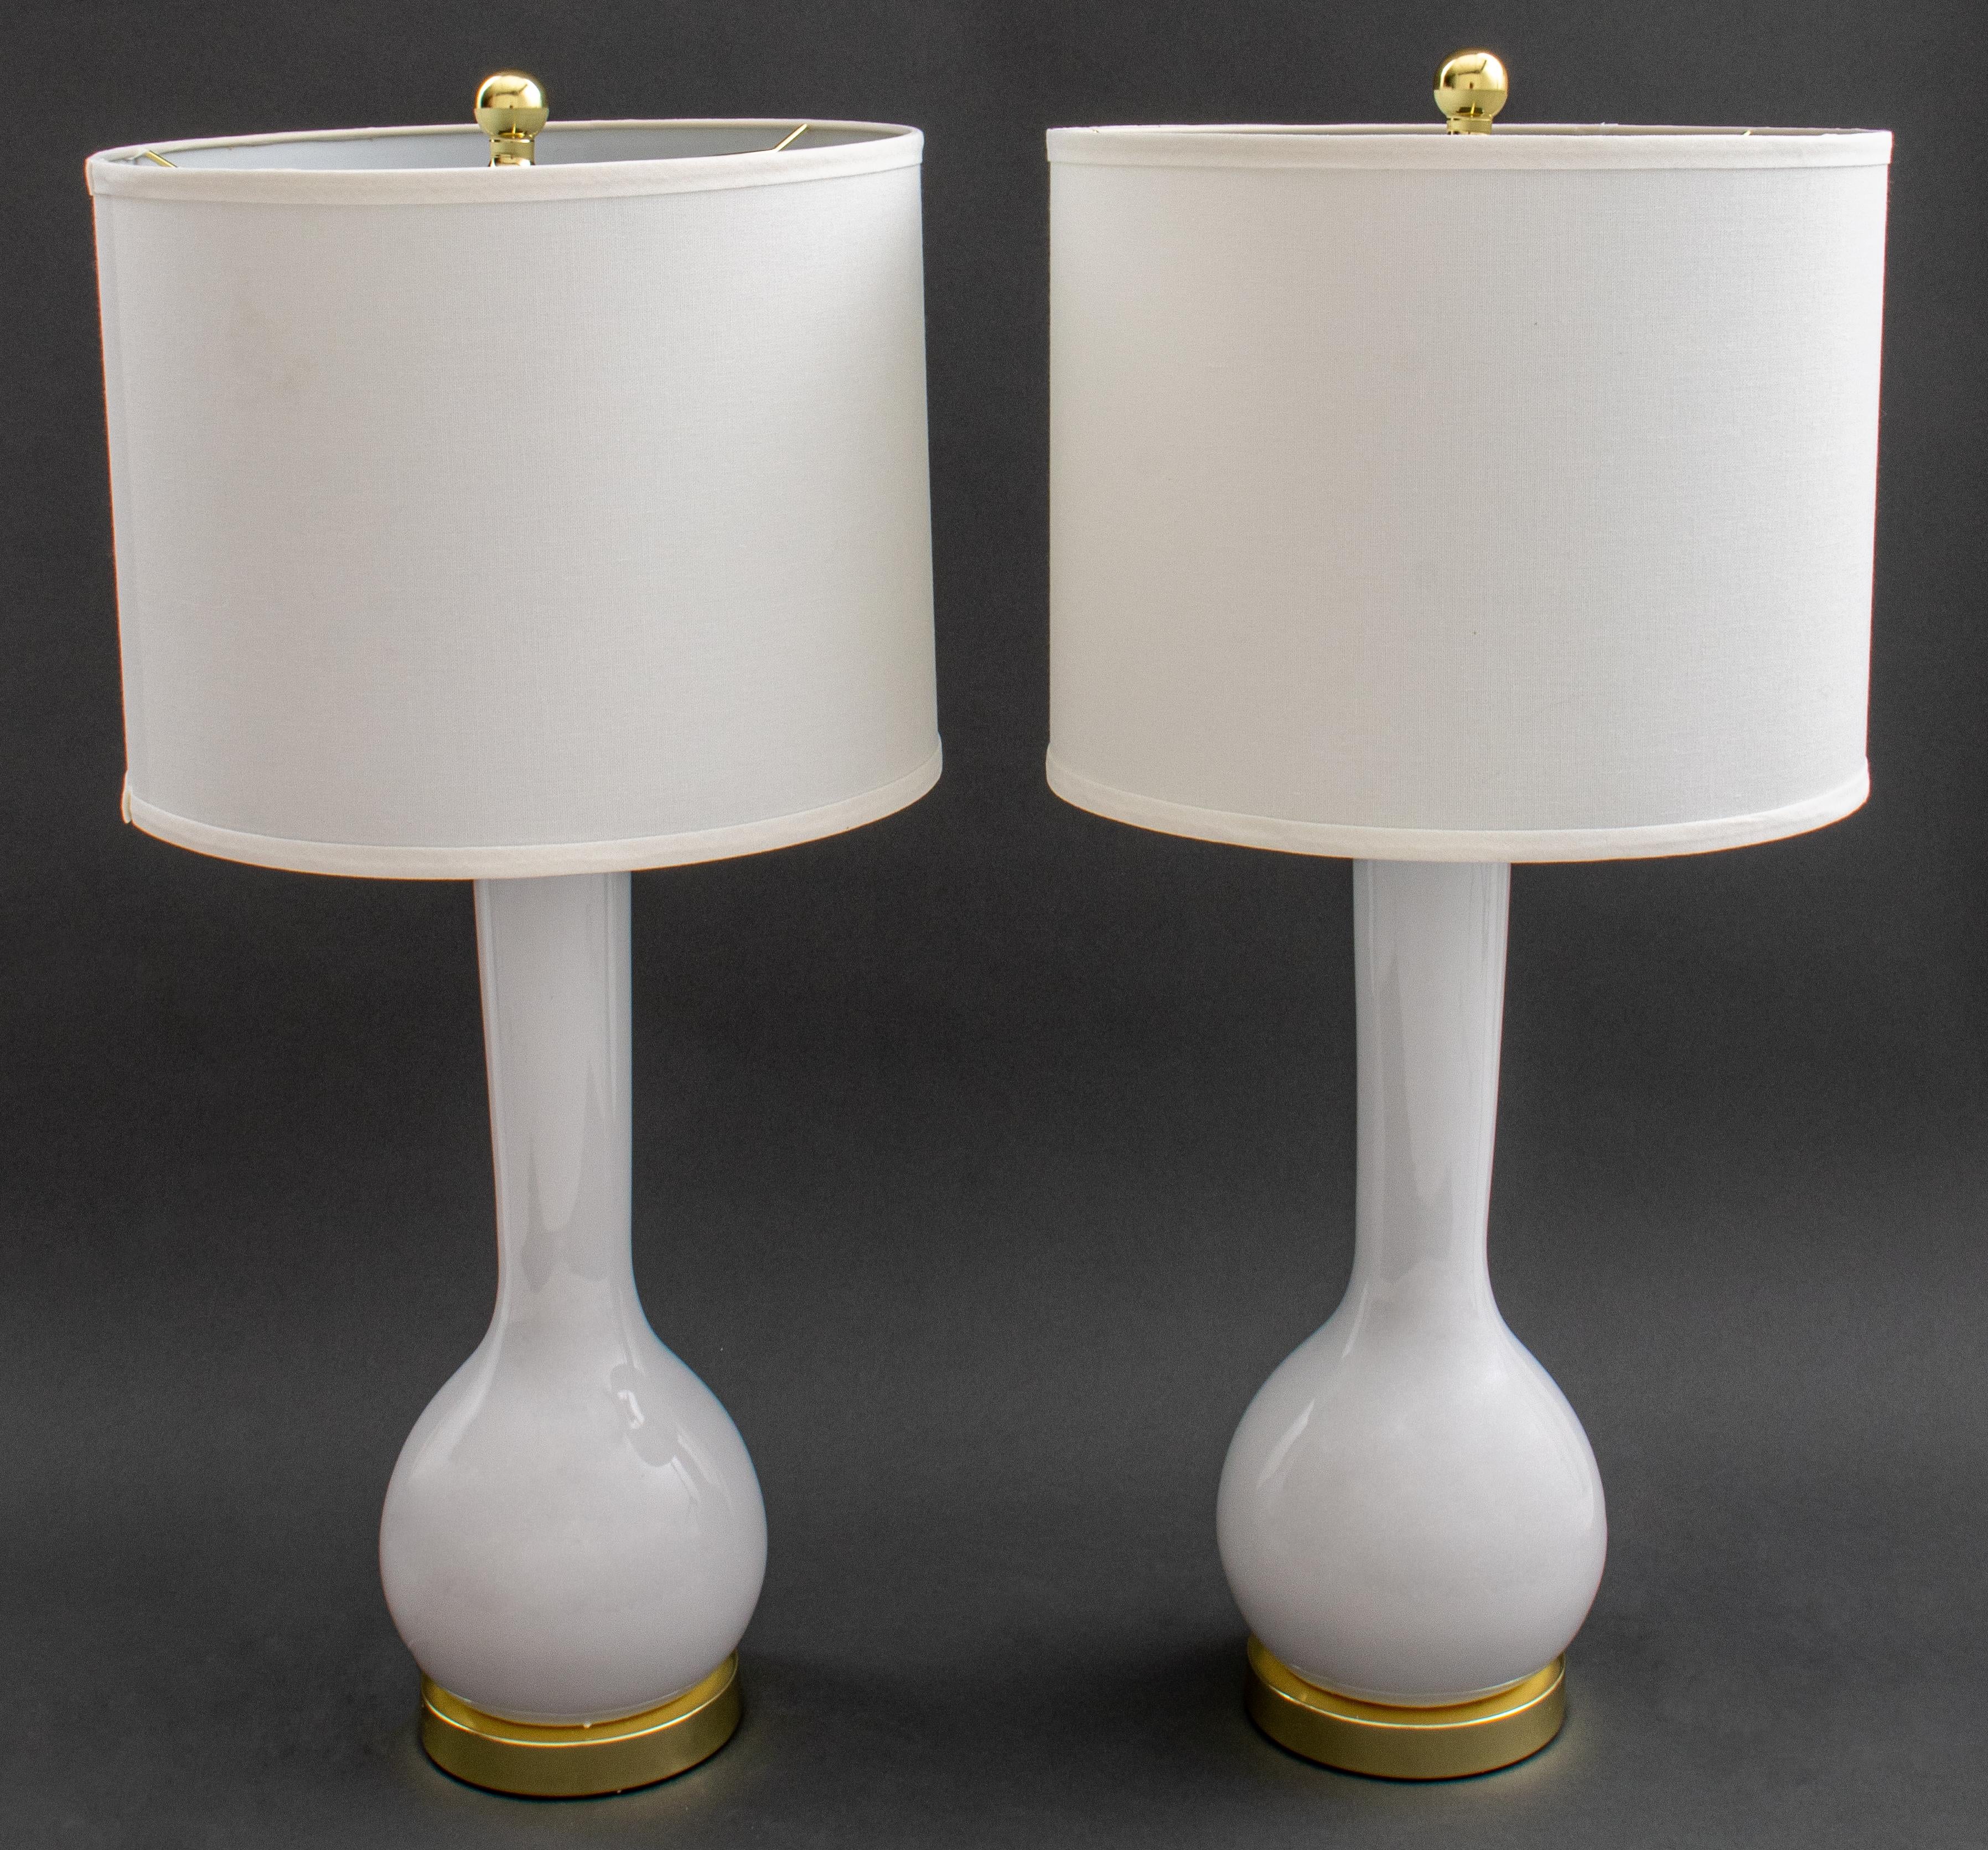 Paar moderne weiße Porzellanlampen in Form einer Flaschenvase mit goldfarbenen Metallharfen, runden Sockeln und Endstücken, auf der Unterseite markiert. 30.5